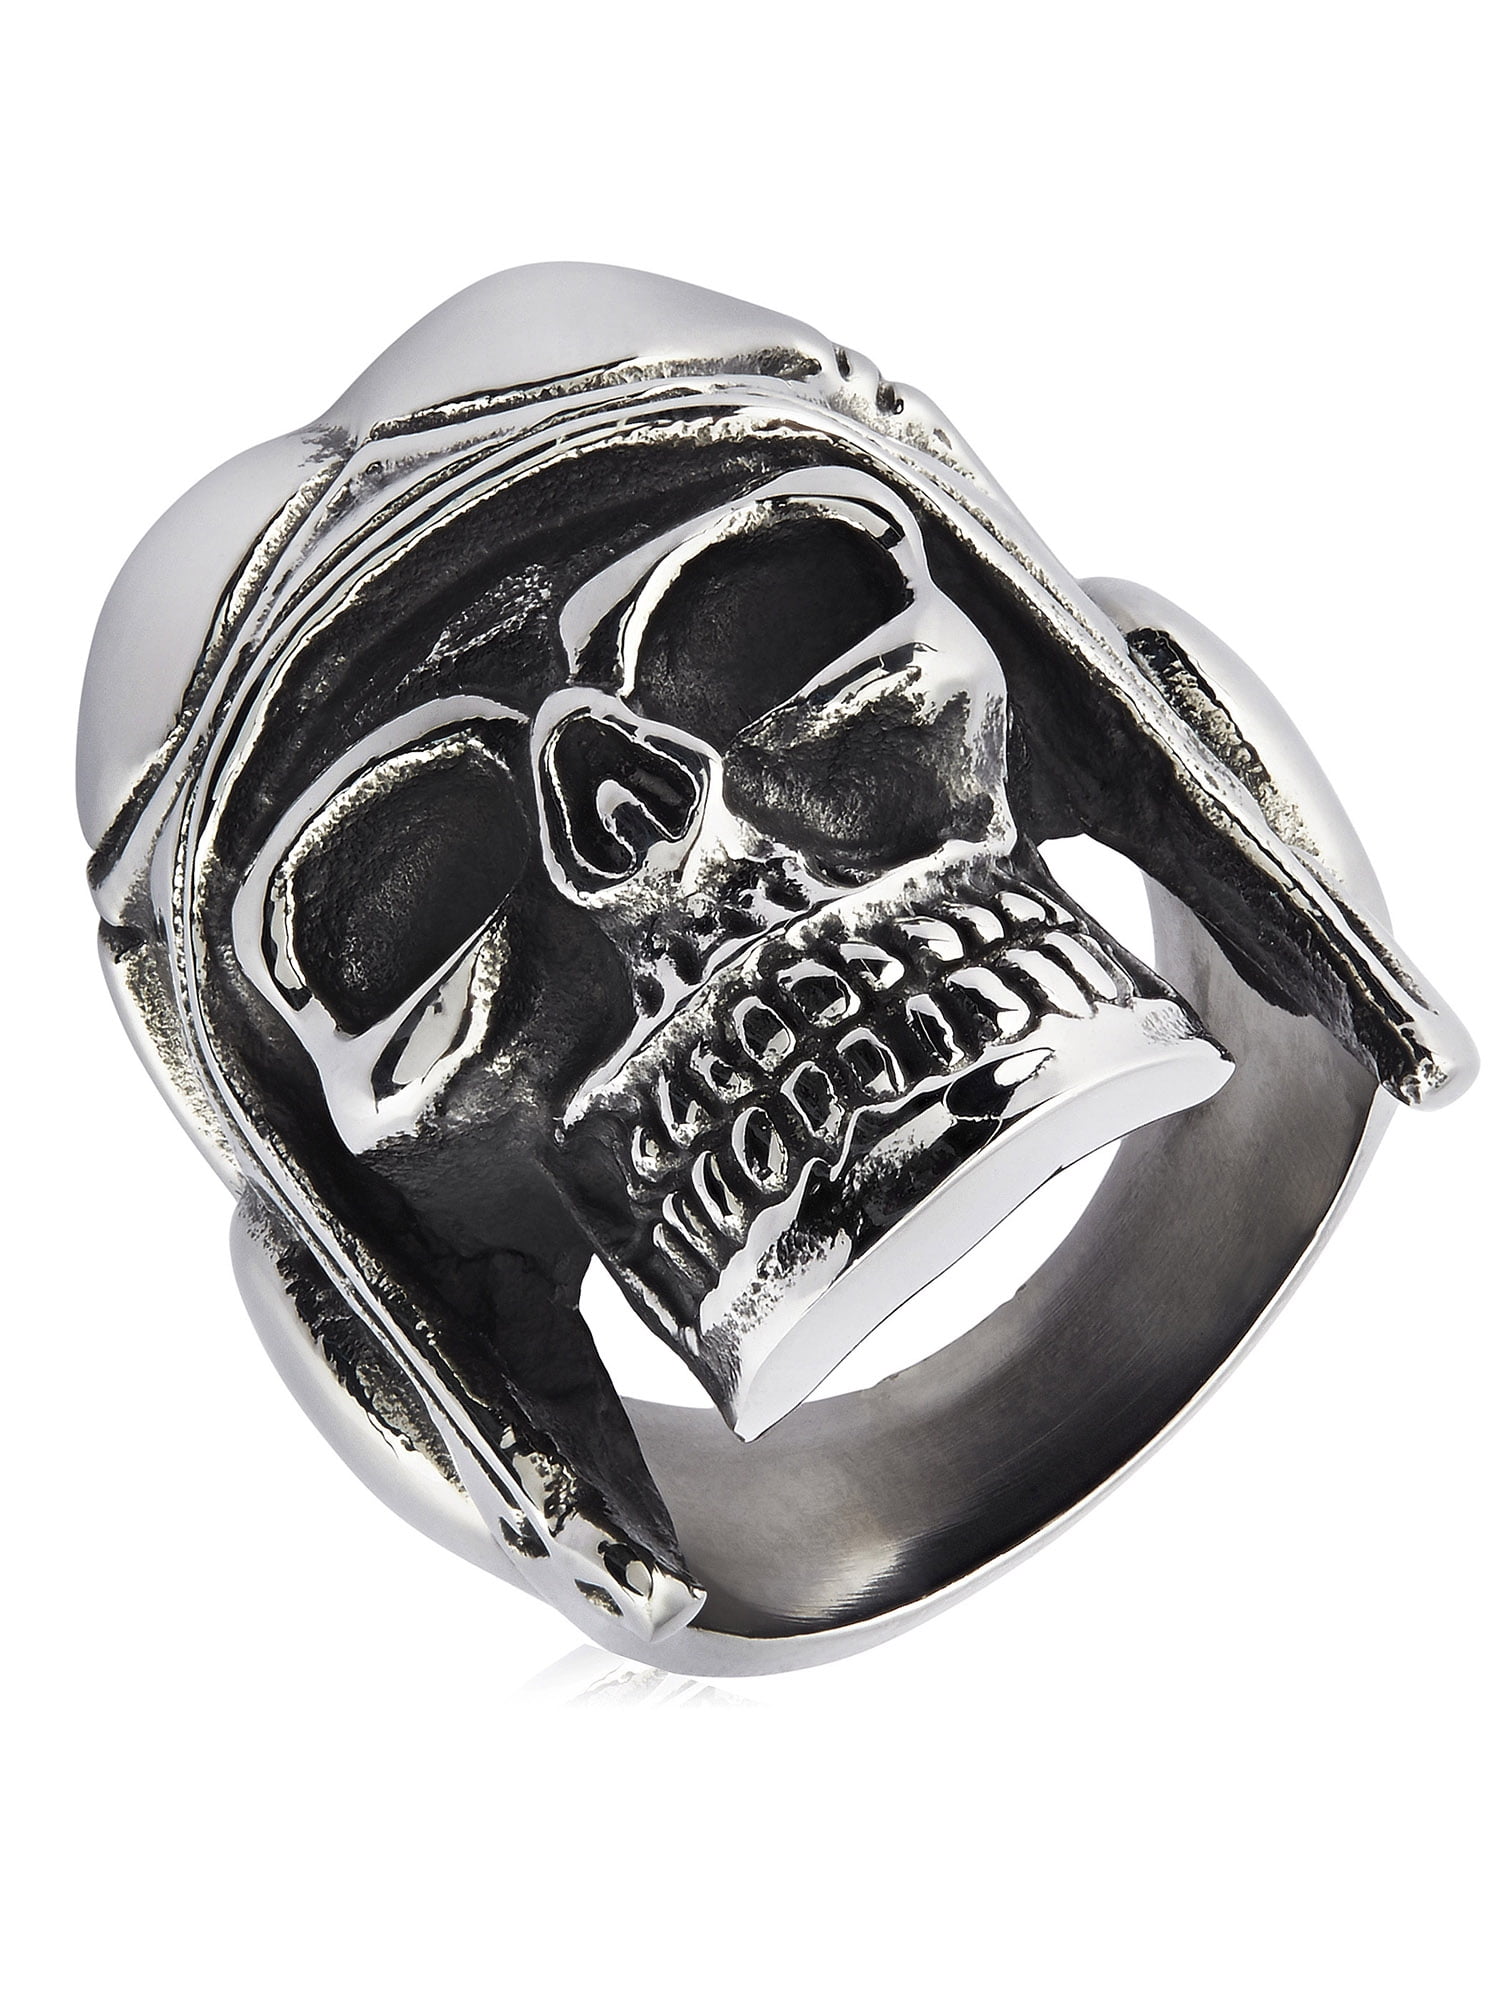 316 Stainless Steel Rings Motorcycle Biker PUNK Red Eye Skull Ring Men's Jewelry 